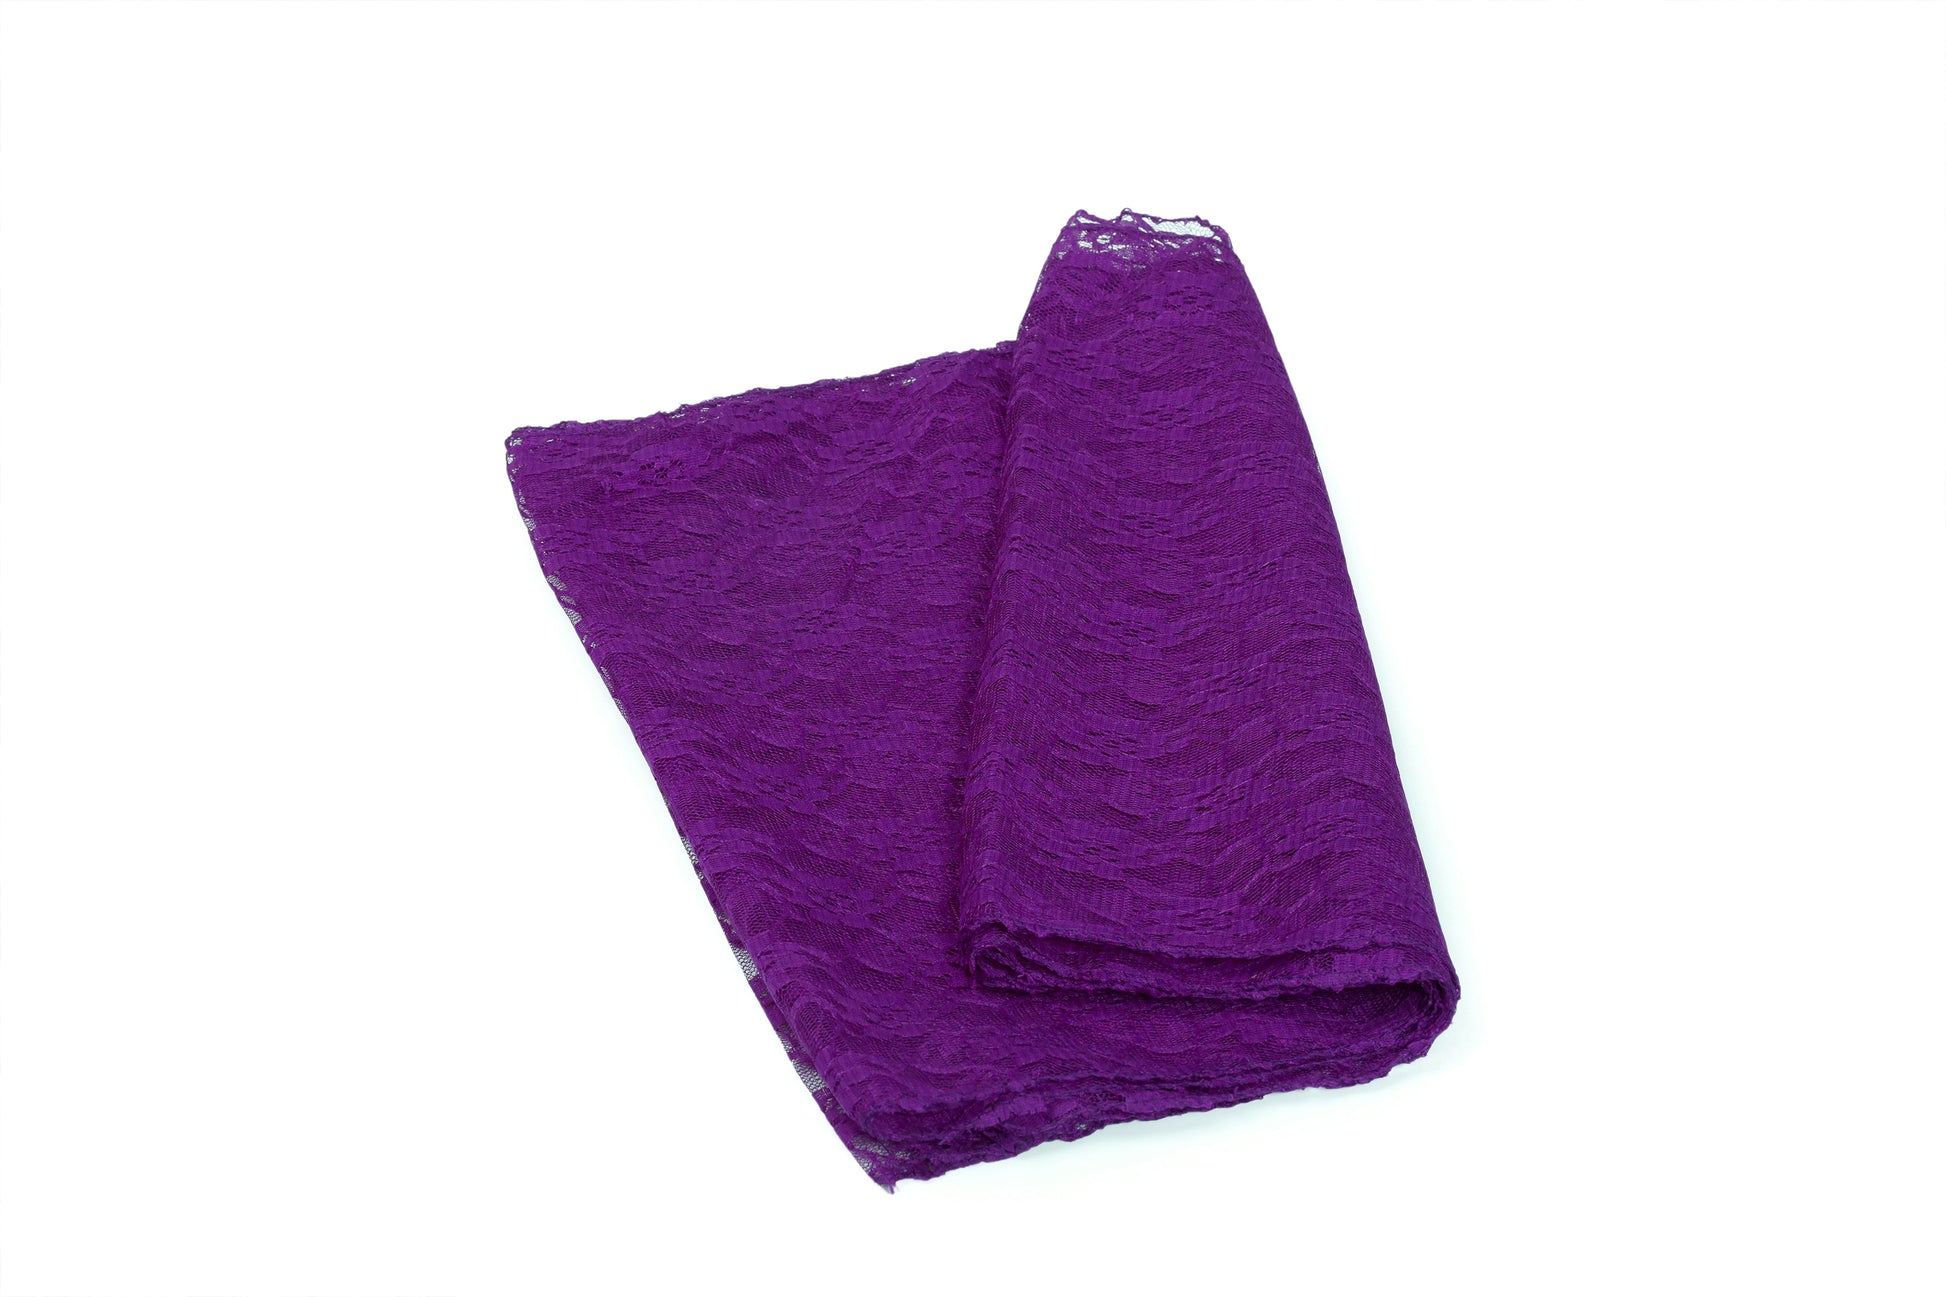 Cadbury Purple,95de5ada-63d4-437c-be29-f52f36c926bf